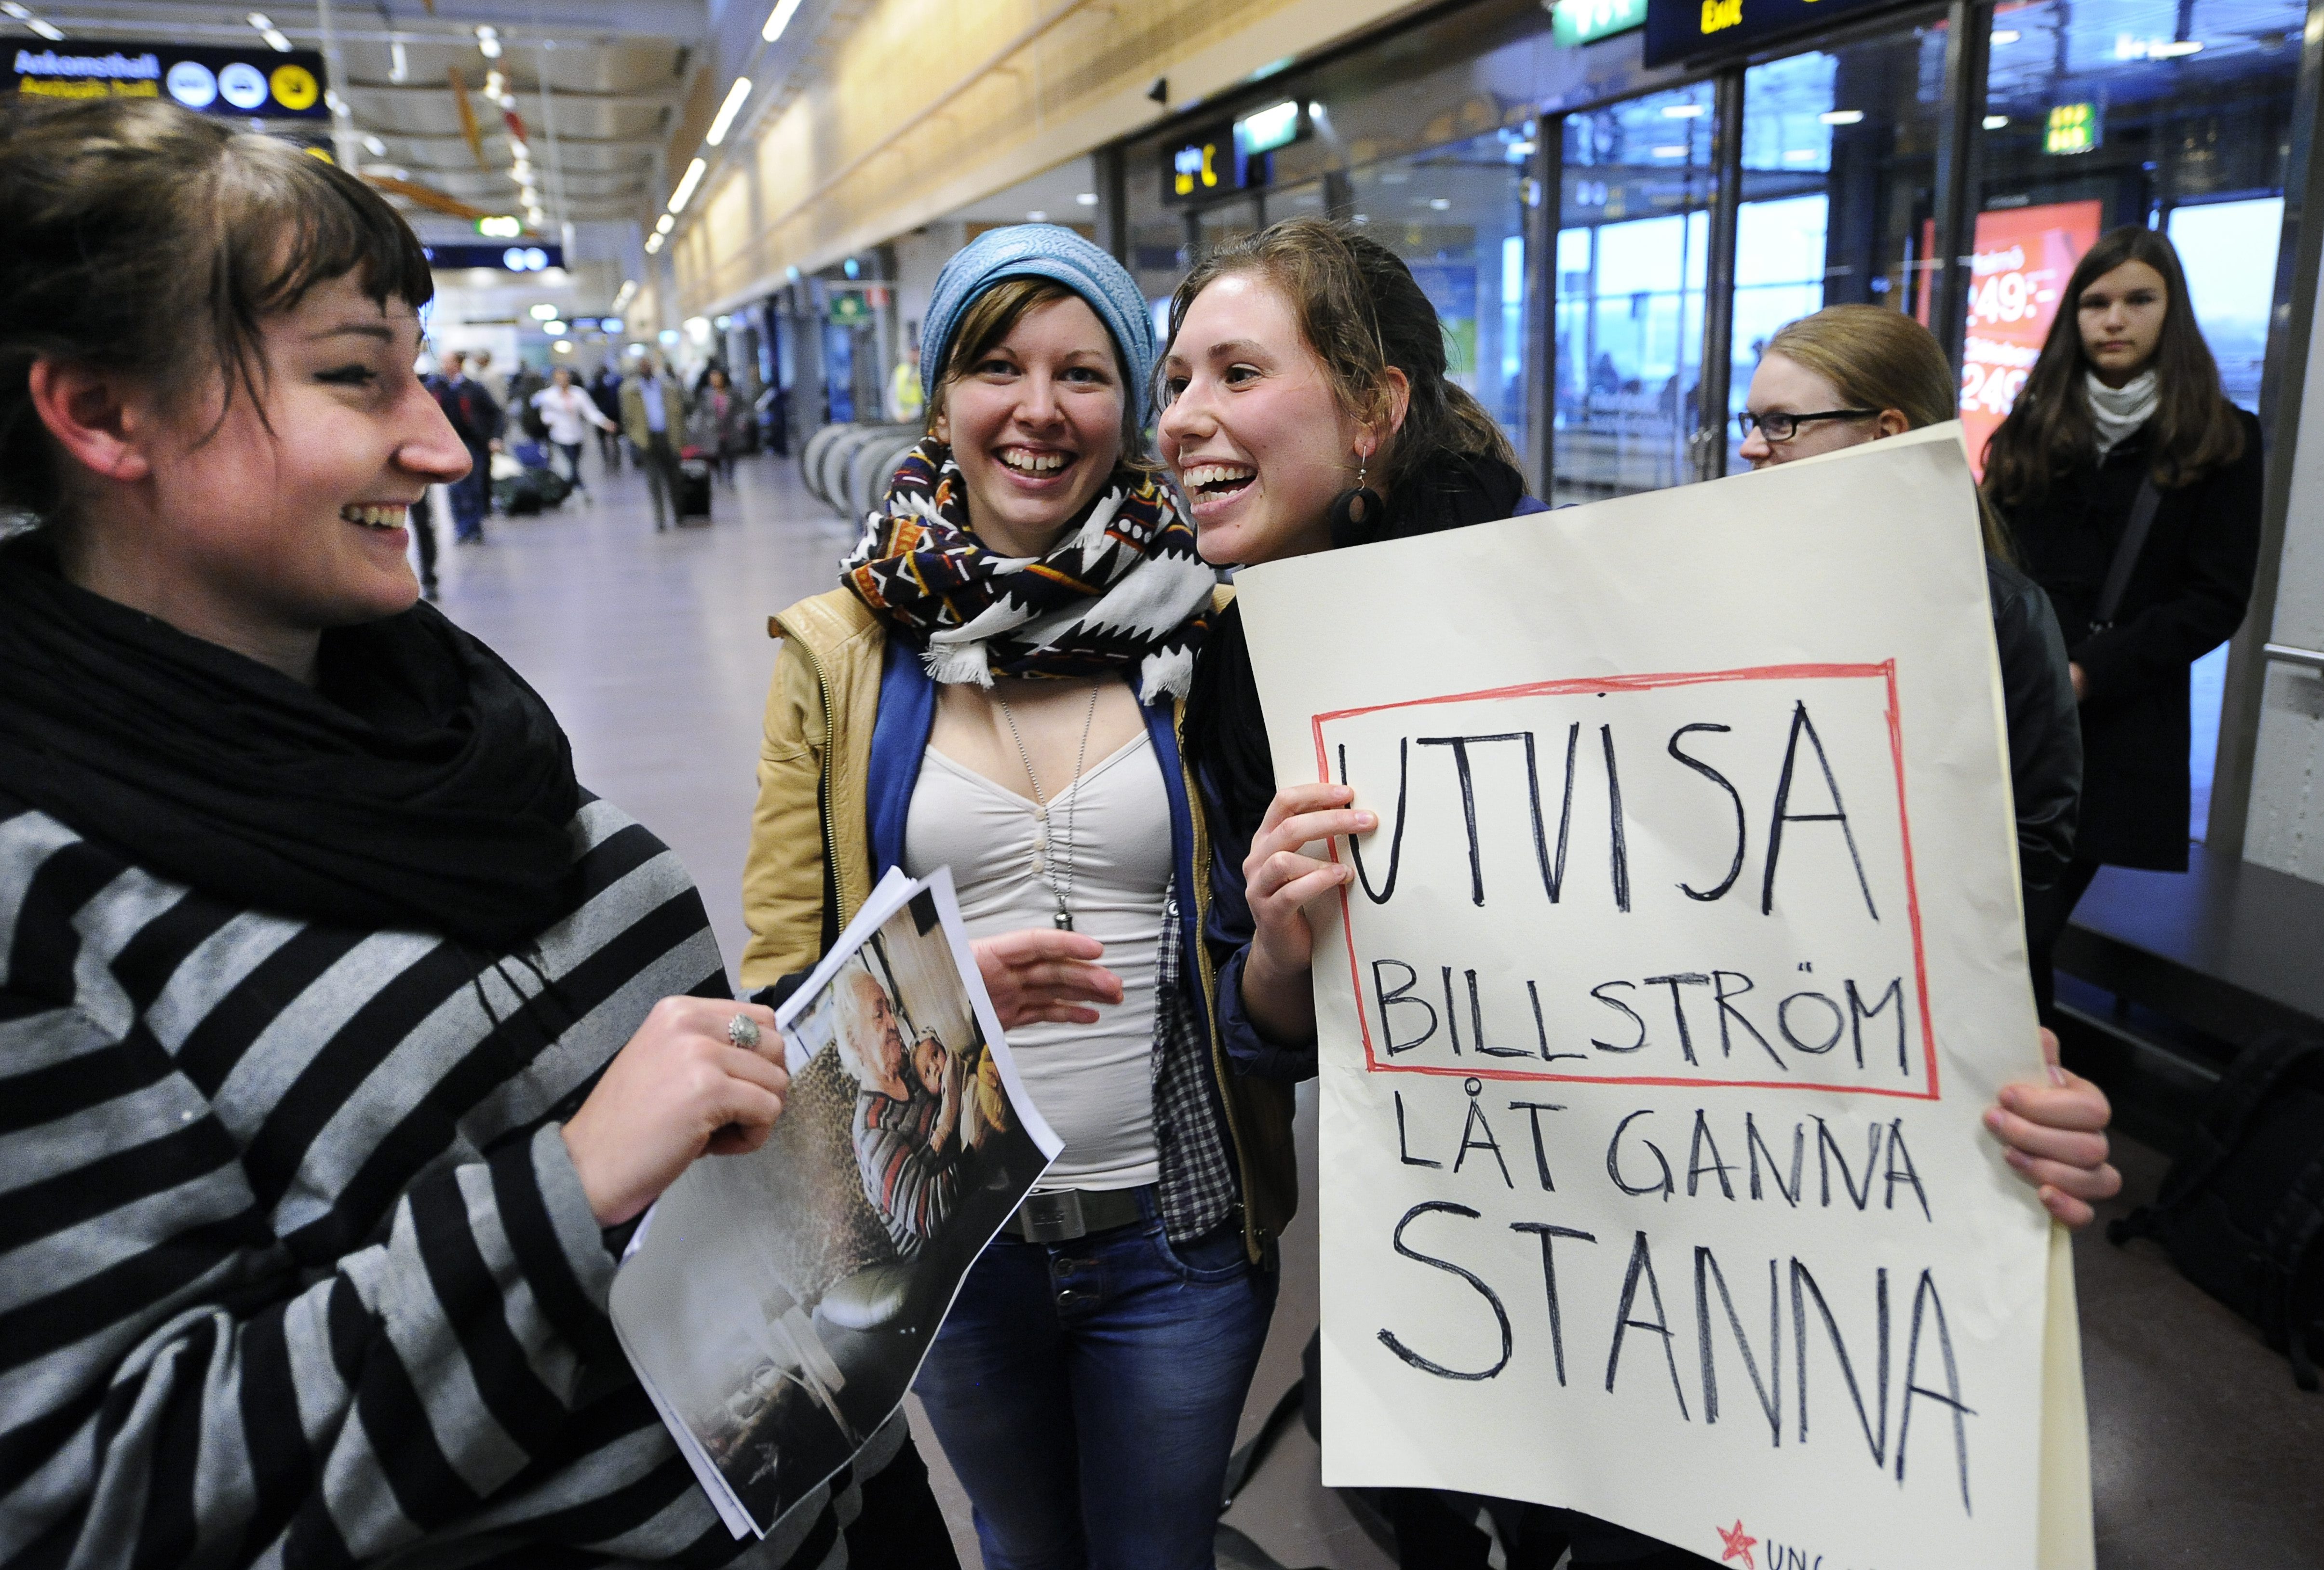 Många protesterade när Ganna skulle utvisas från Sverige.